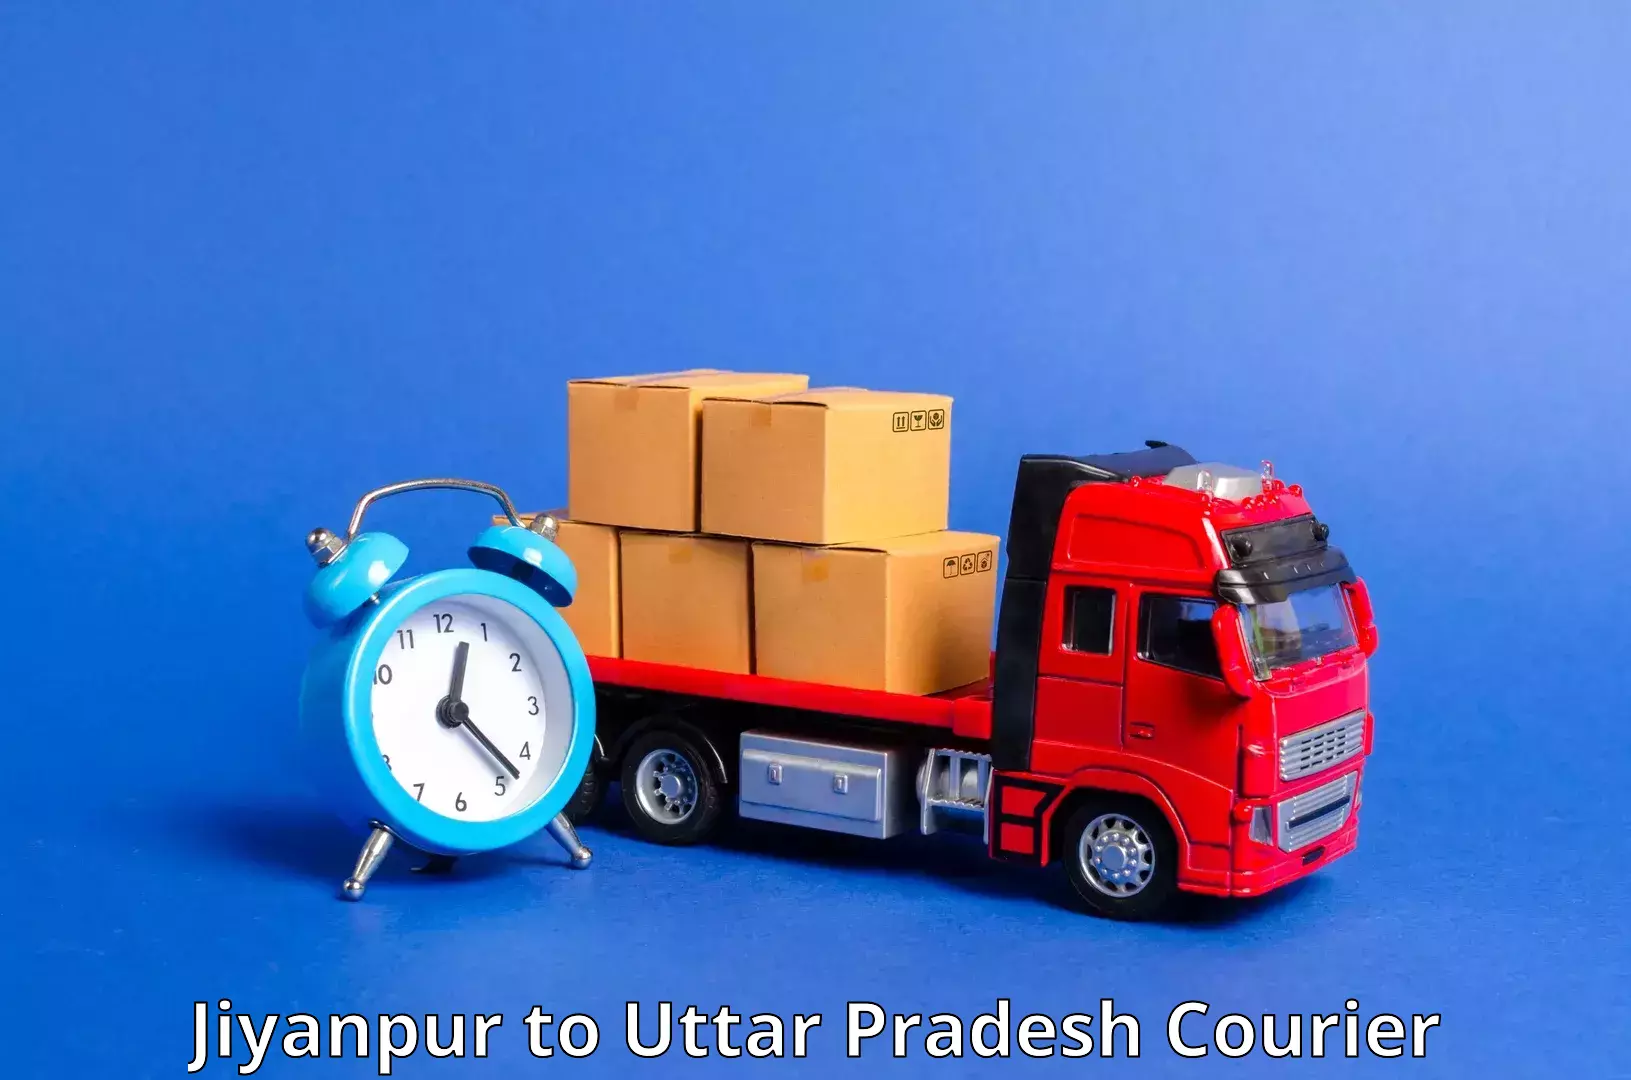 Urgent courier needs Jiyanpur to Uttar Pradesh